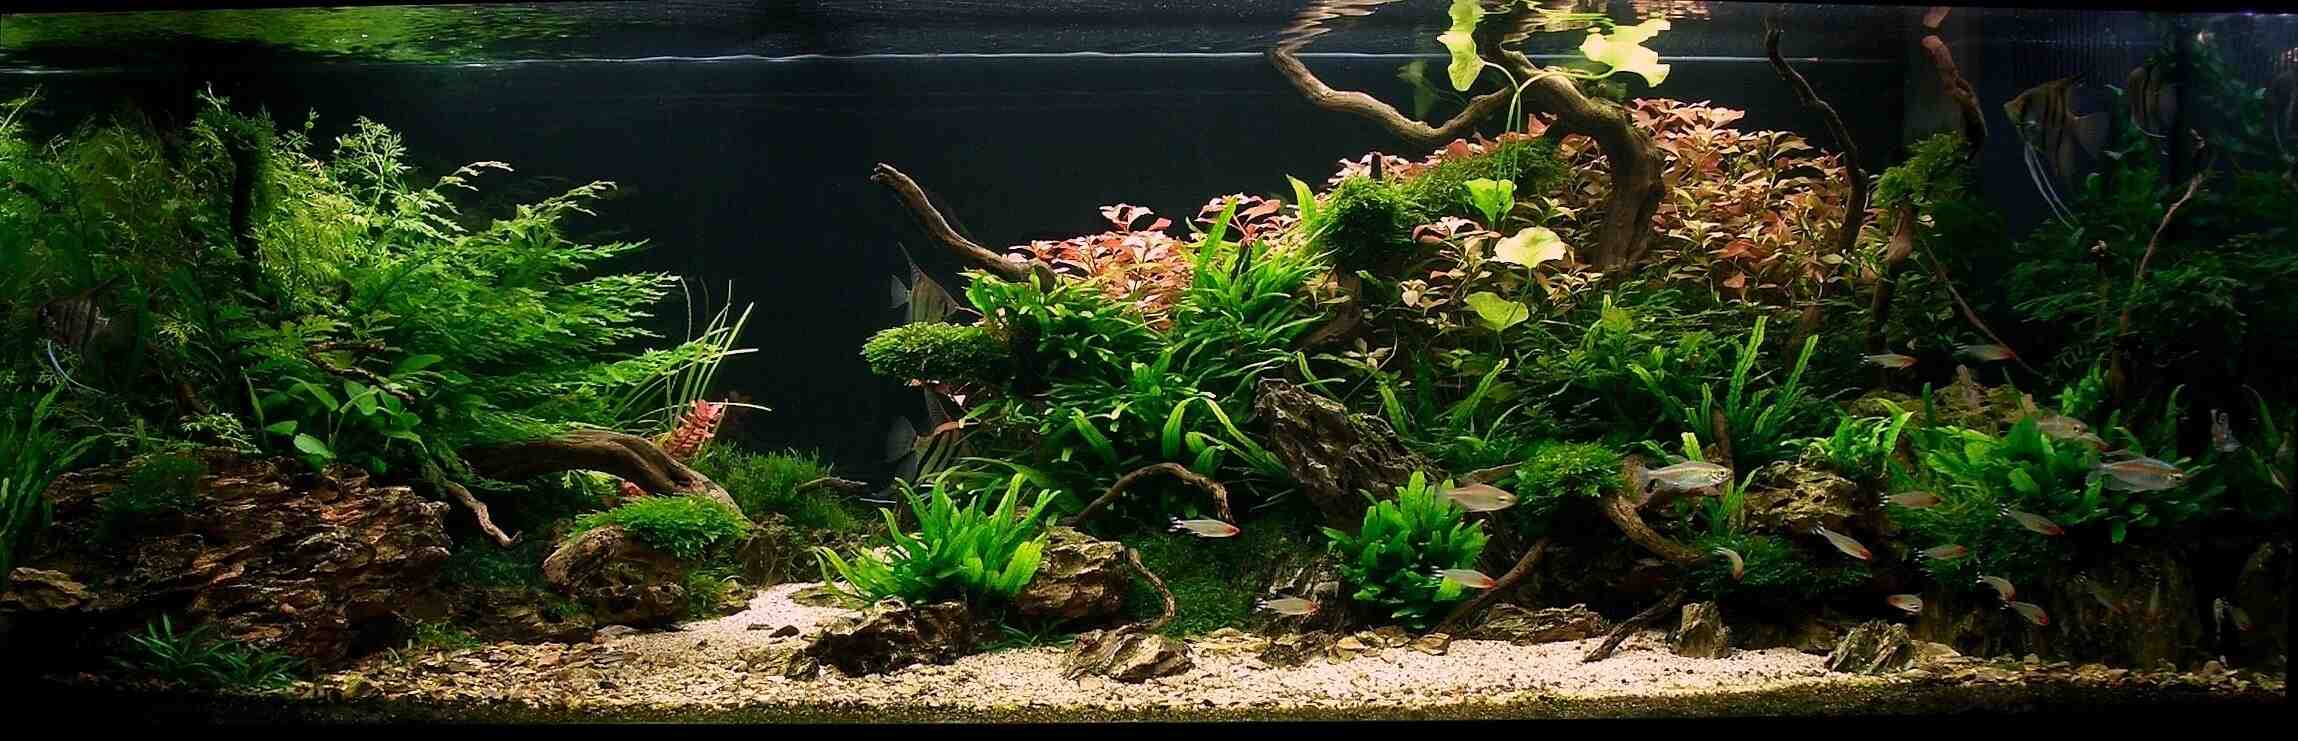 Comment mettre des plantes dans l'aquarium déjà dans l'eau?